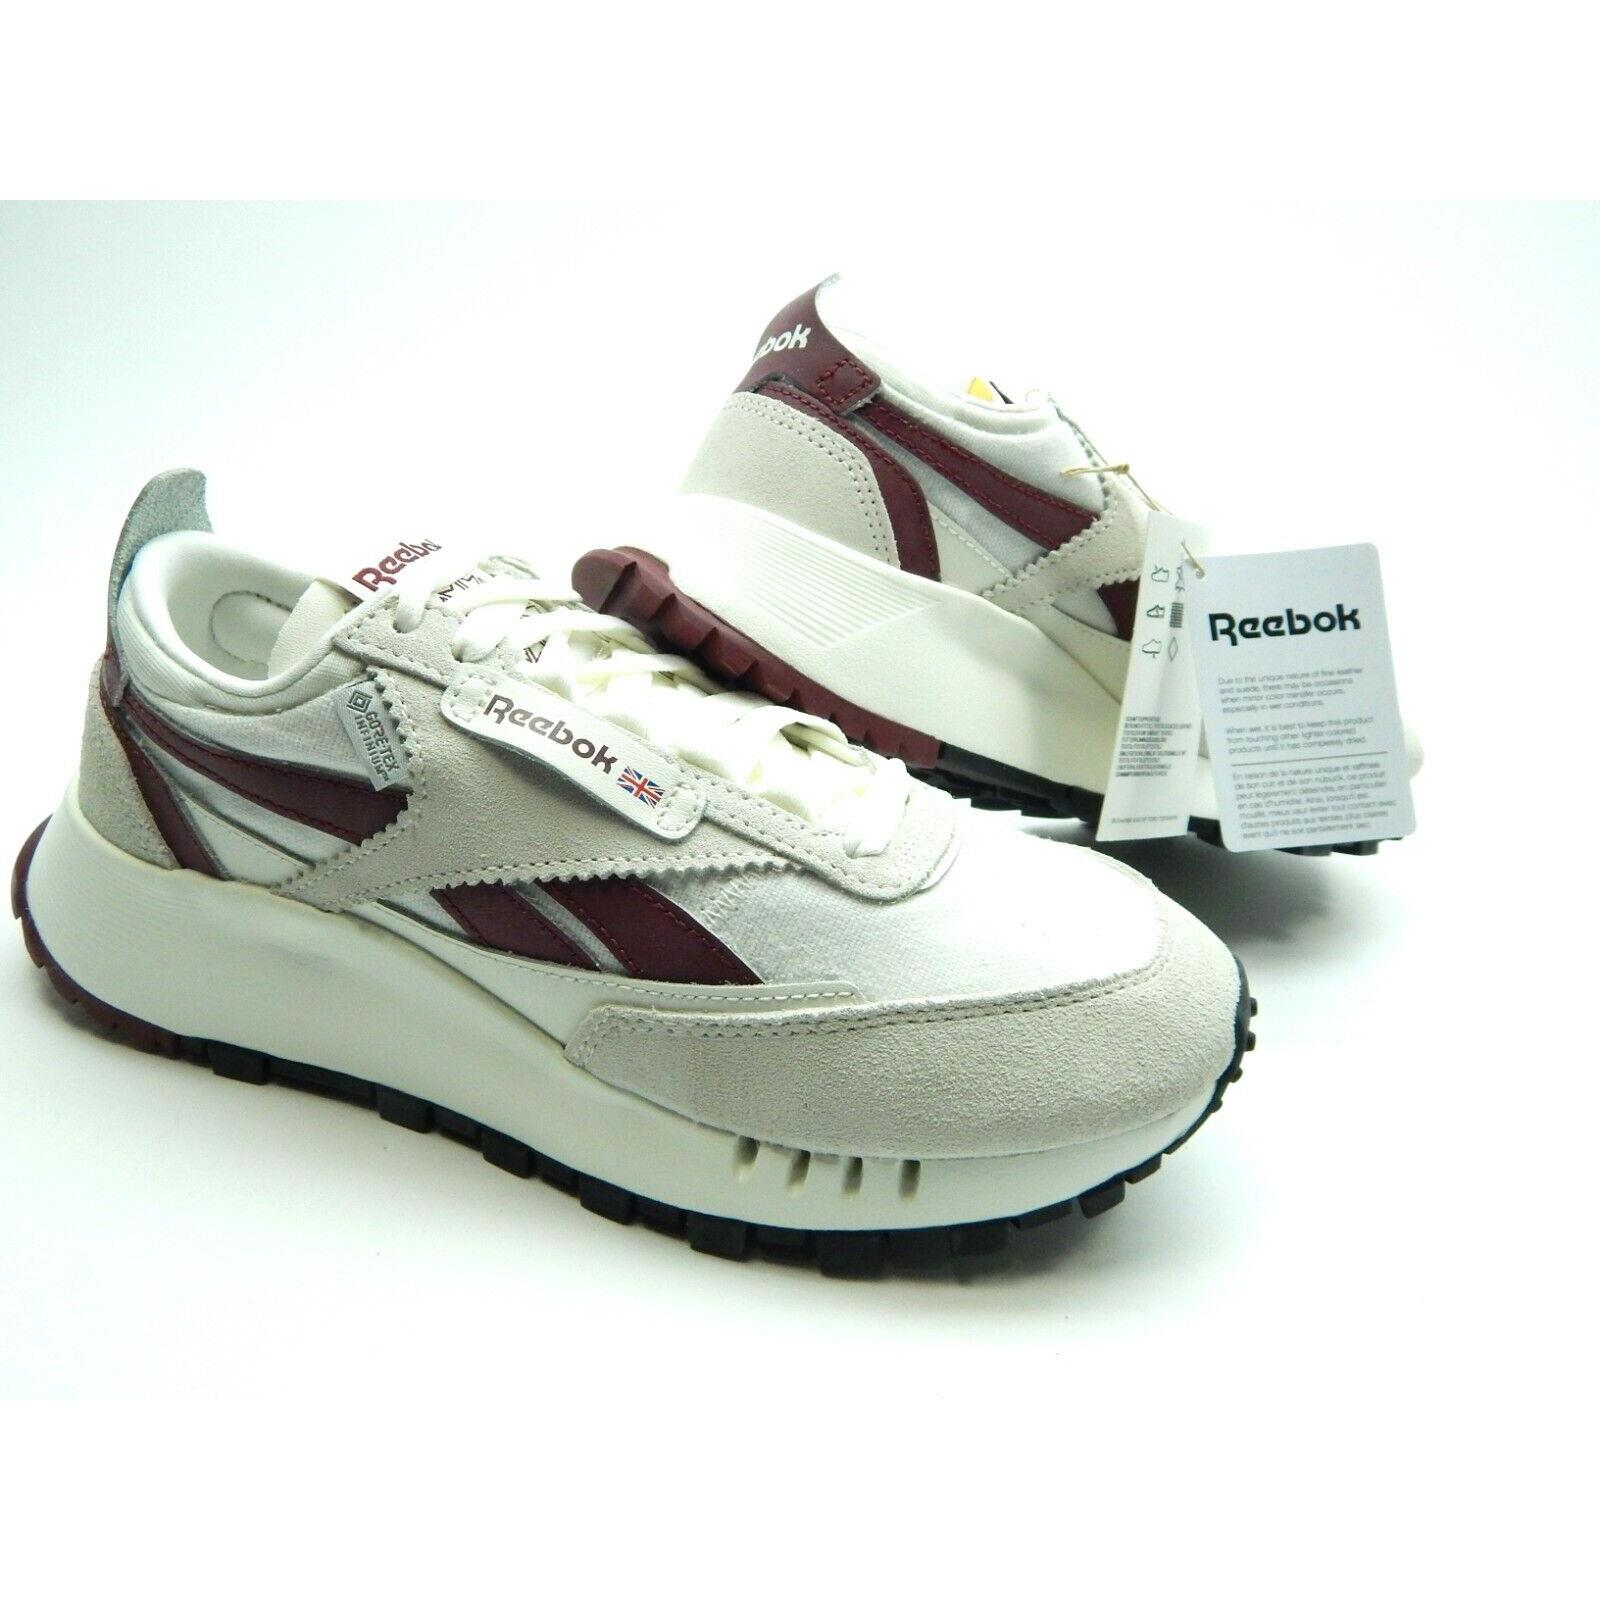 Reebok CL Legacy White Chalk Burgundy H04996 Men Shoes